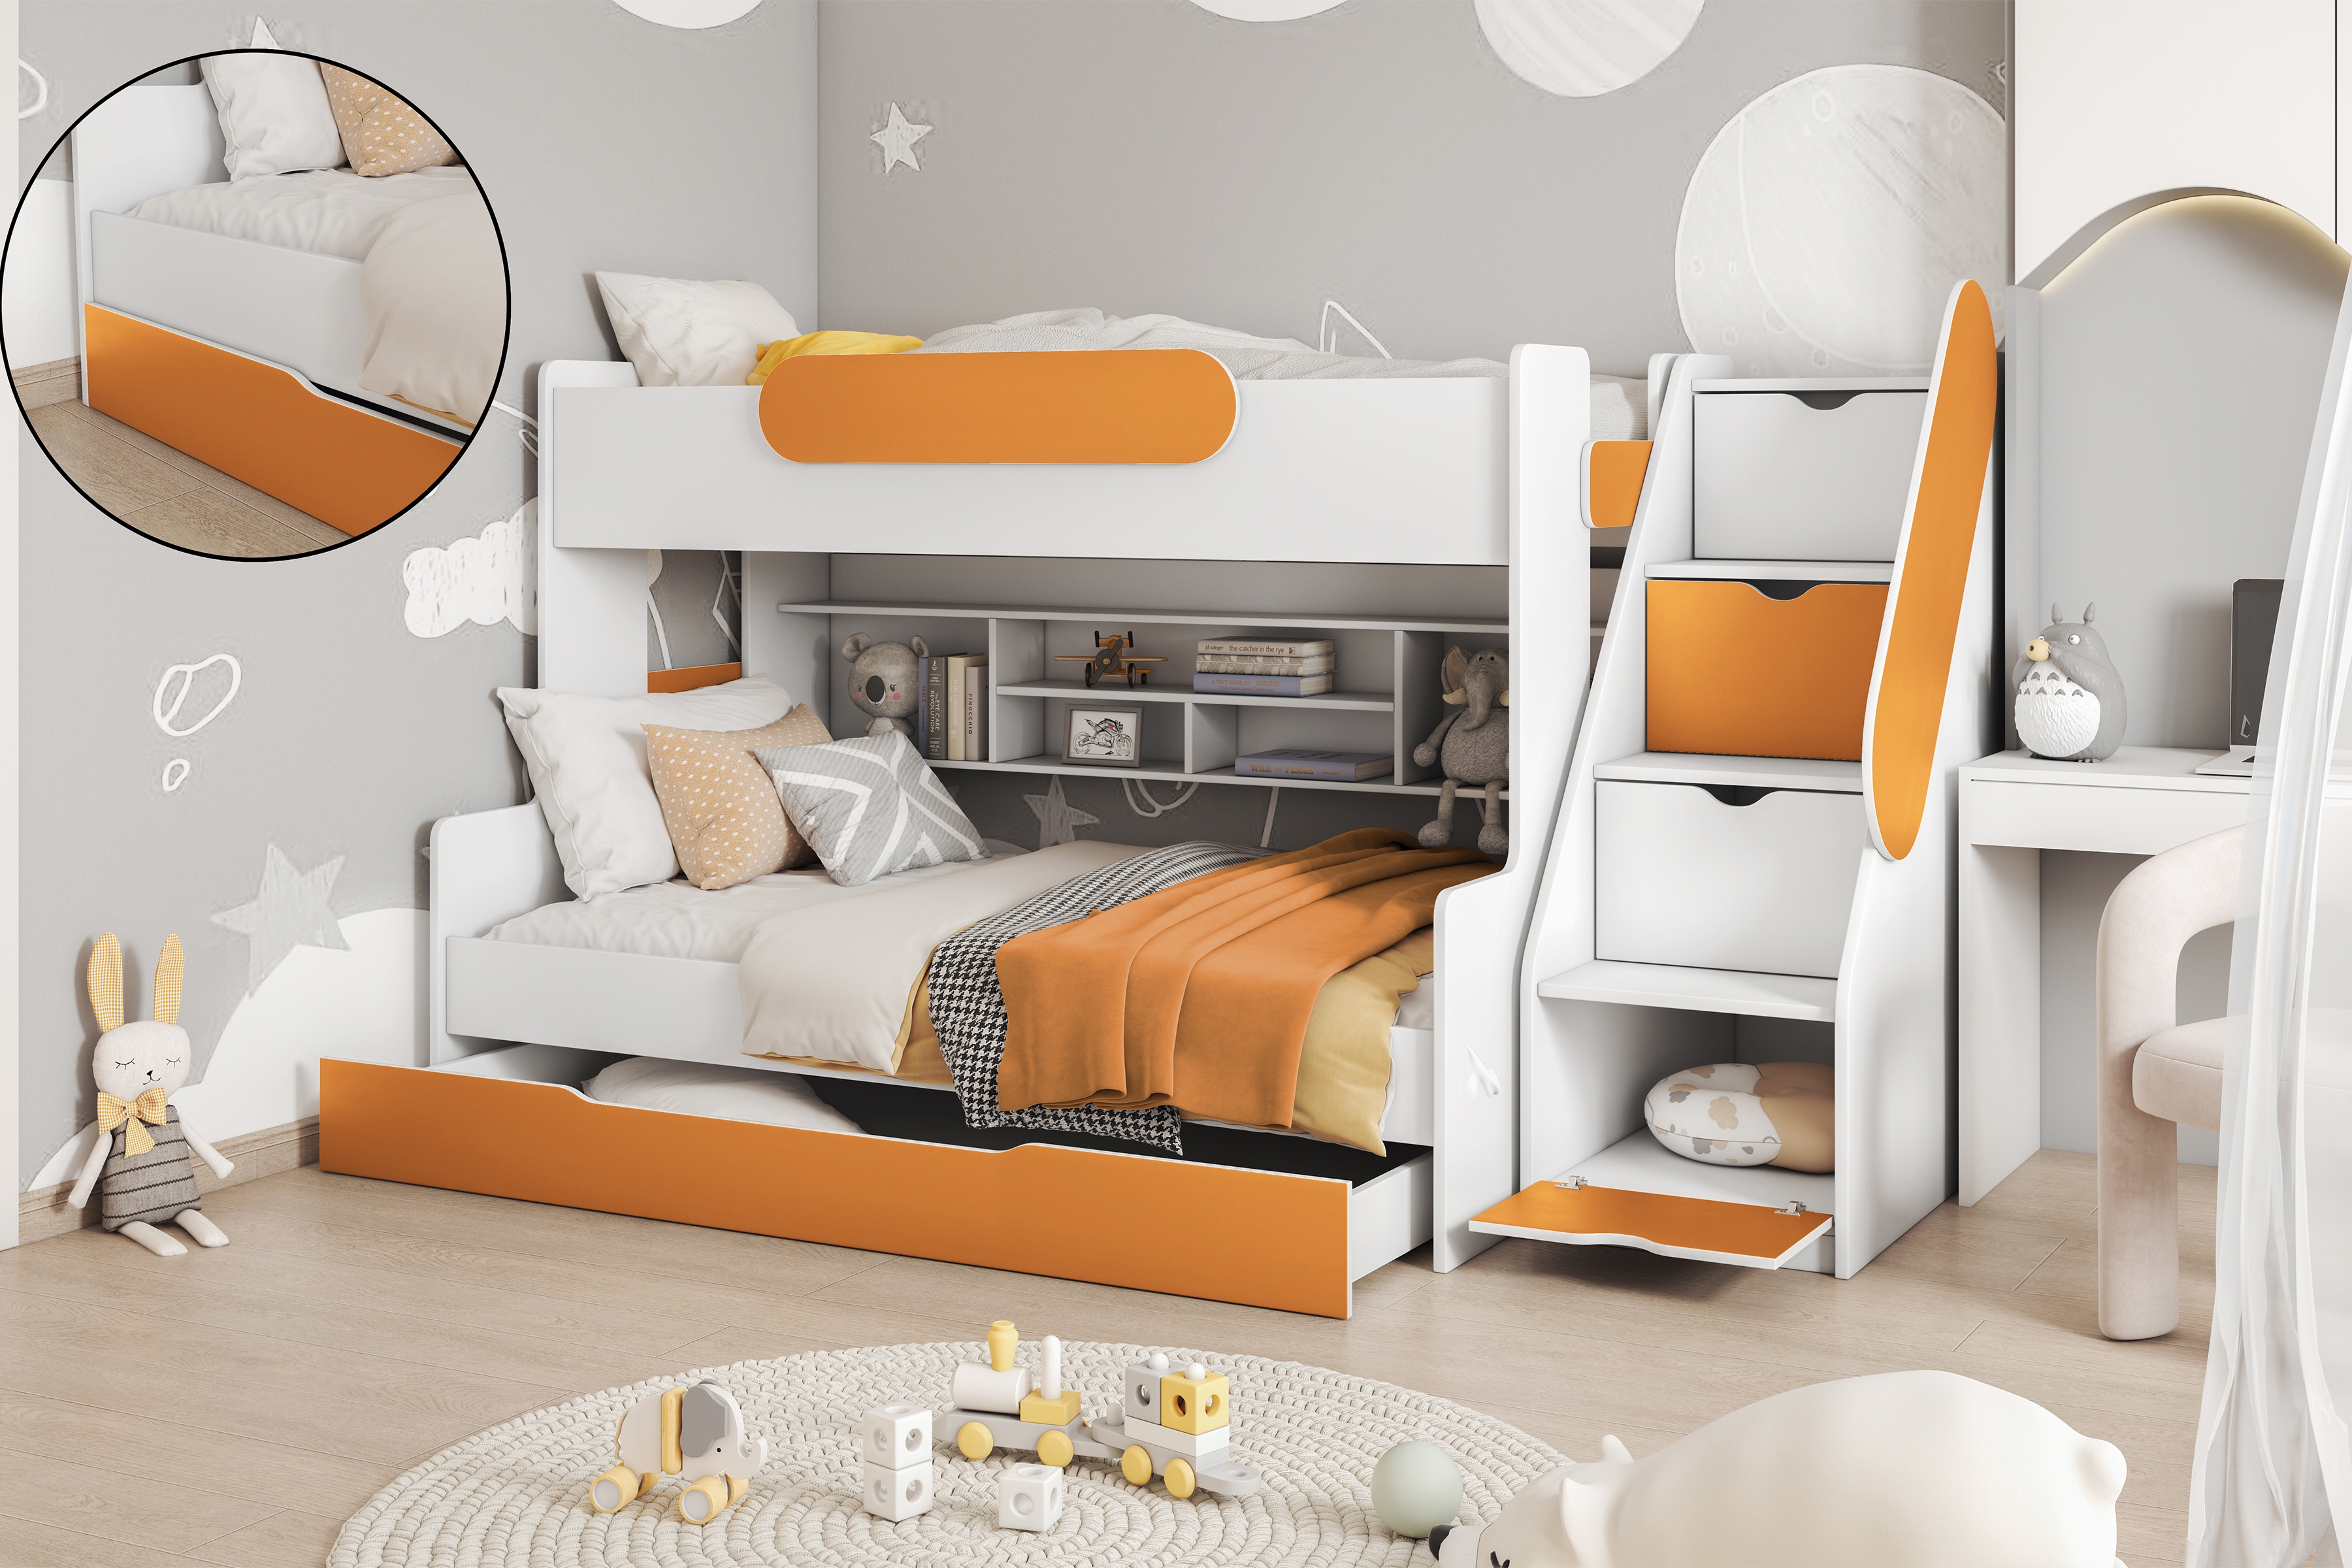 Poschodová posteľ Segan Posteľ dzieciece poschodová Segan - Biely/orange 